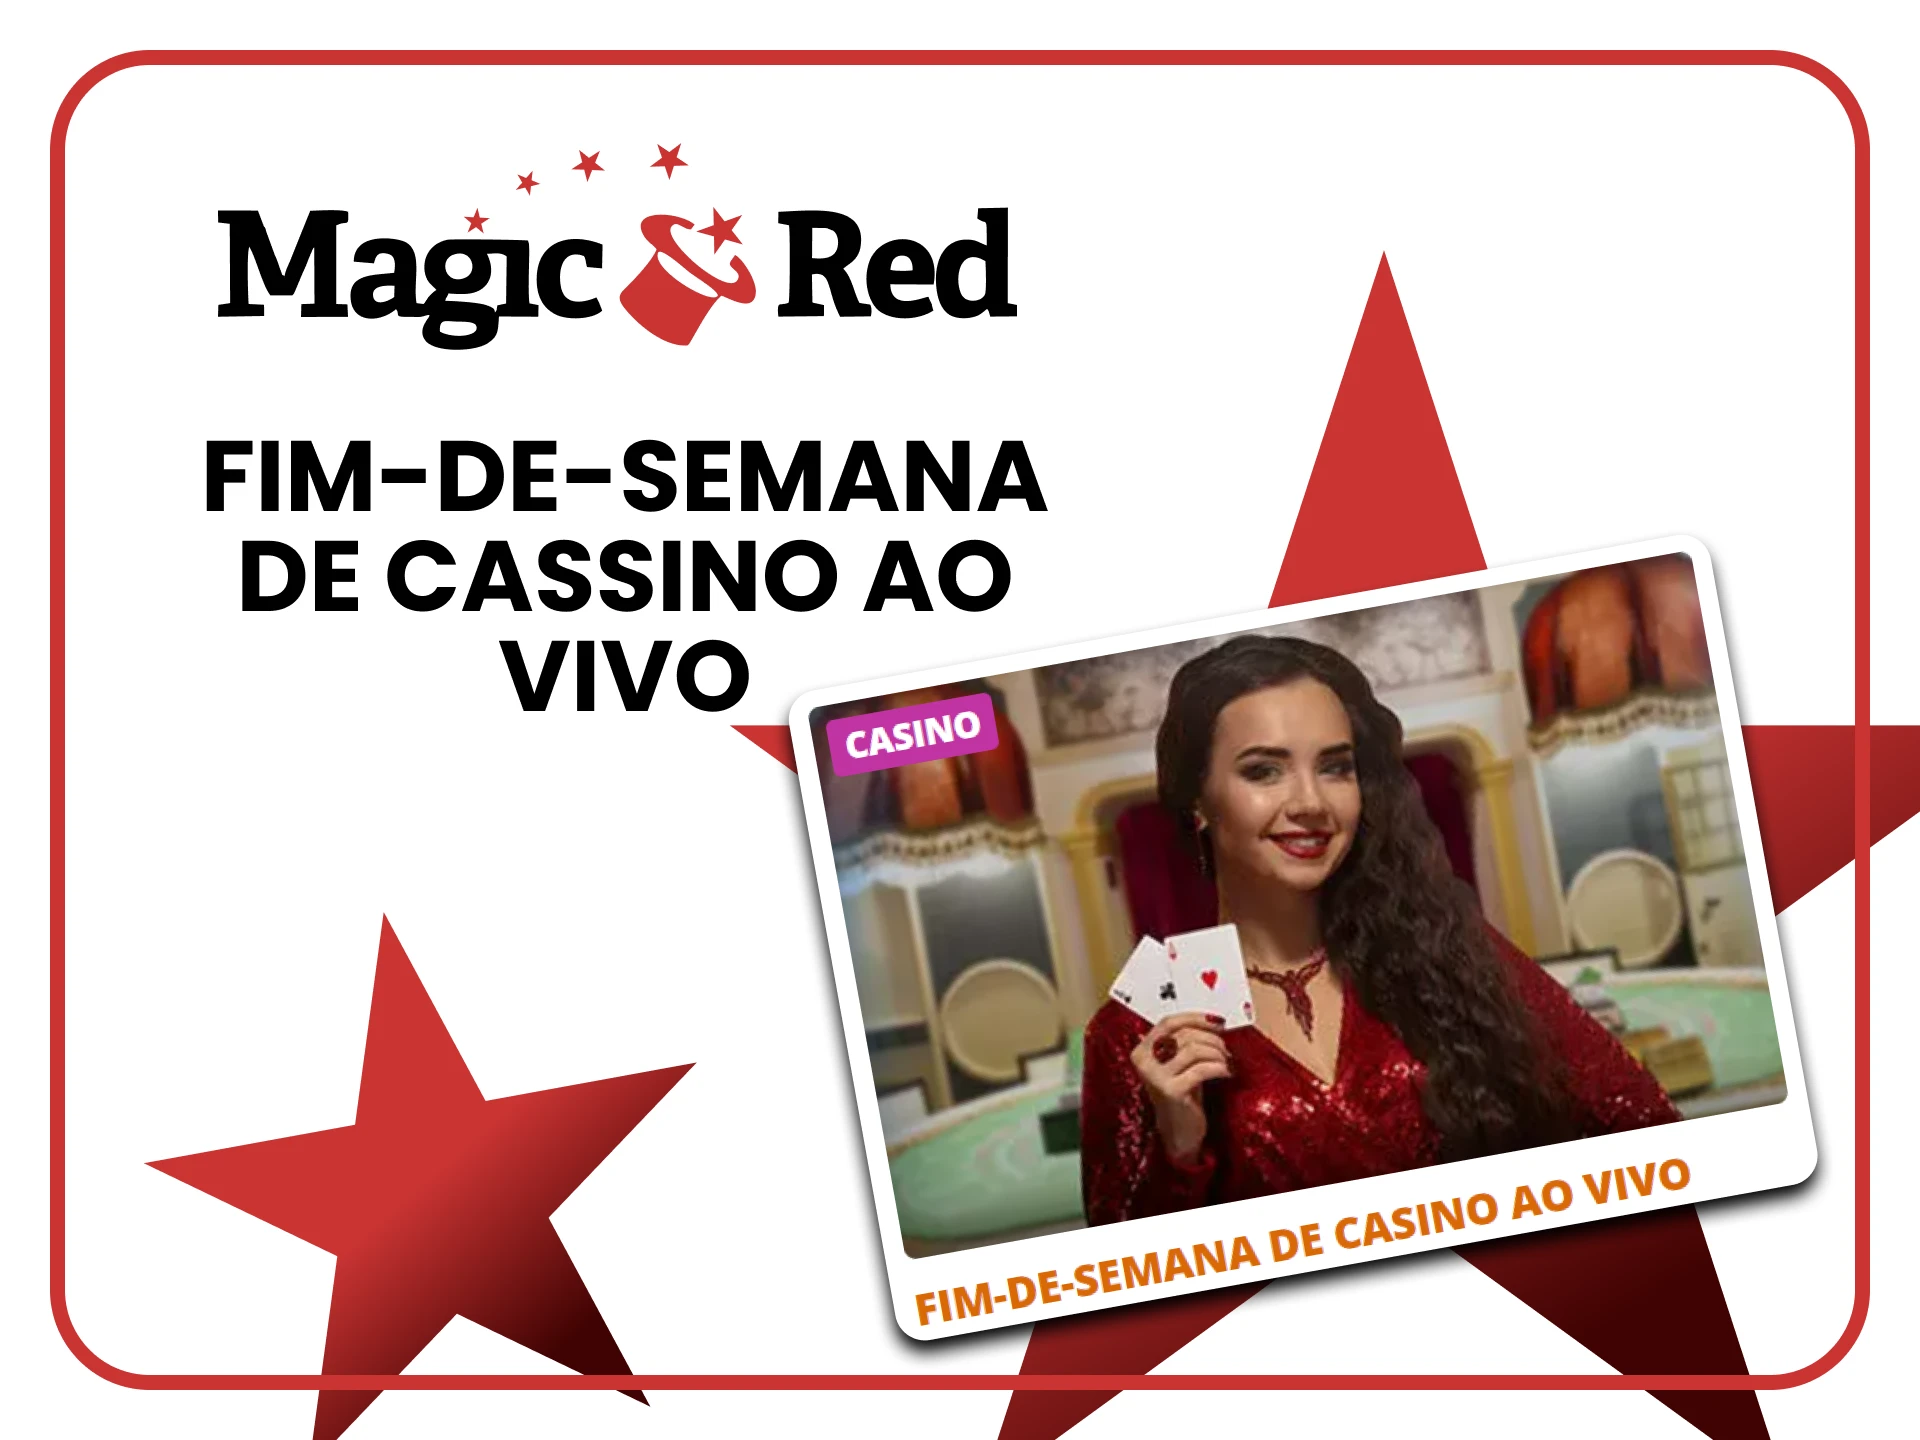 Magic Red oferece bônus para cassinos ao vivo.